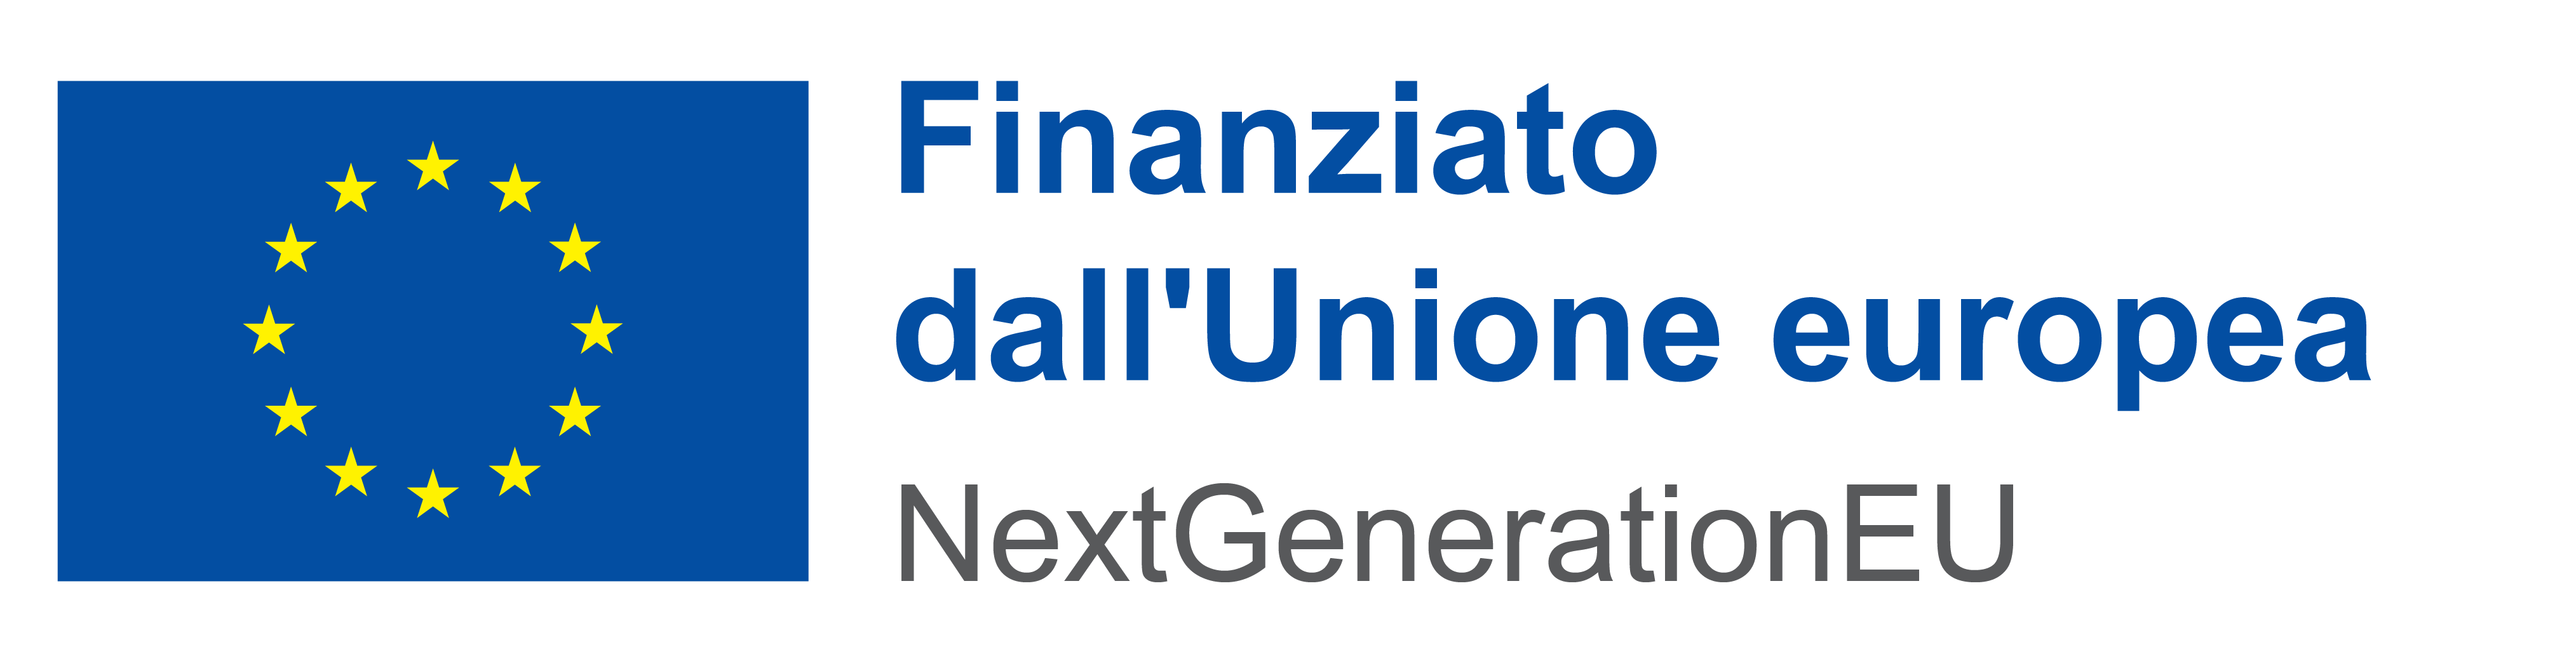 Logo IT Finanziato dallUnione europea